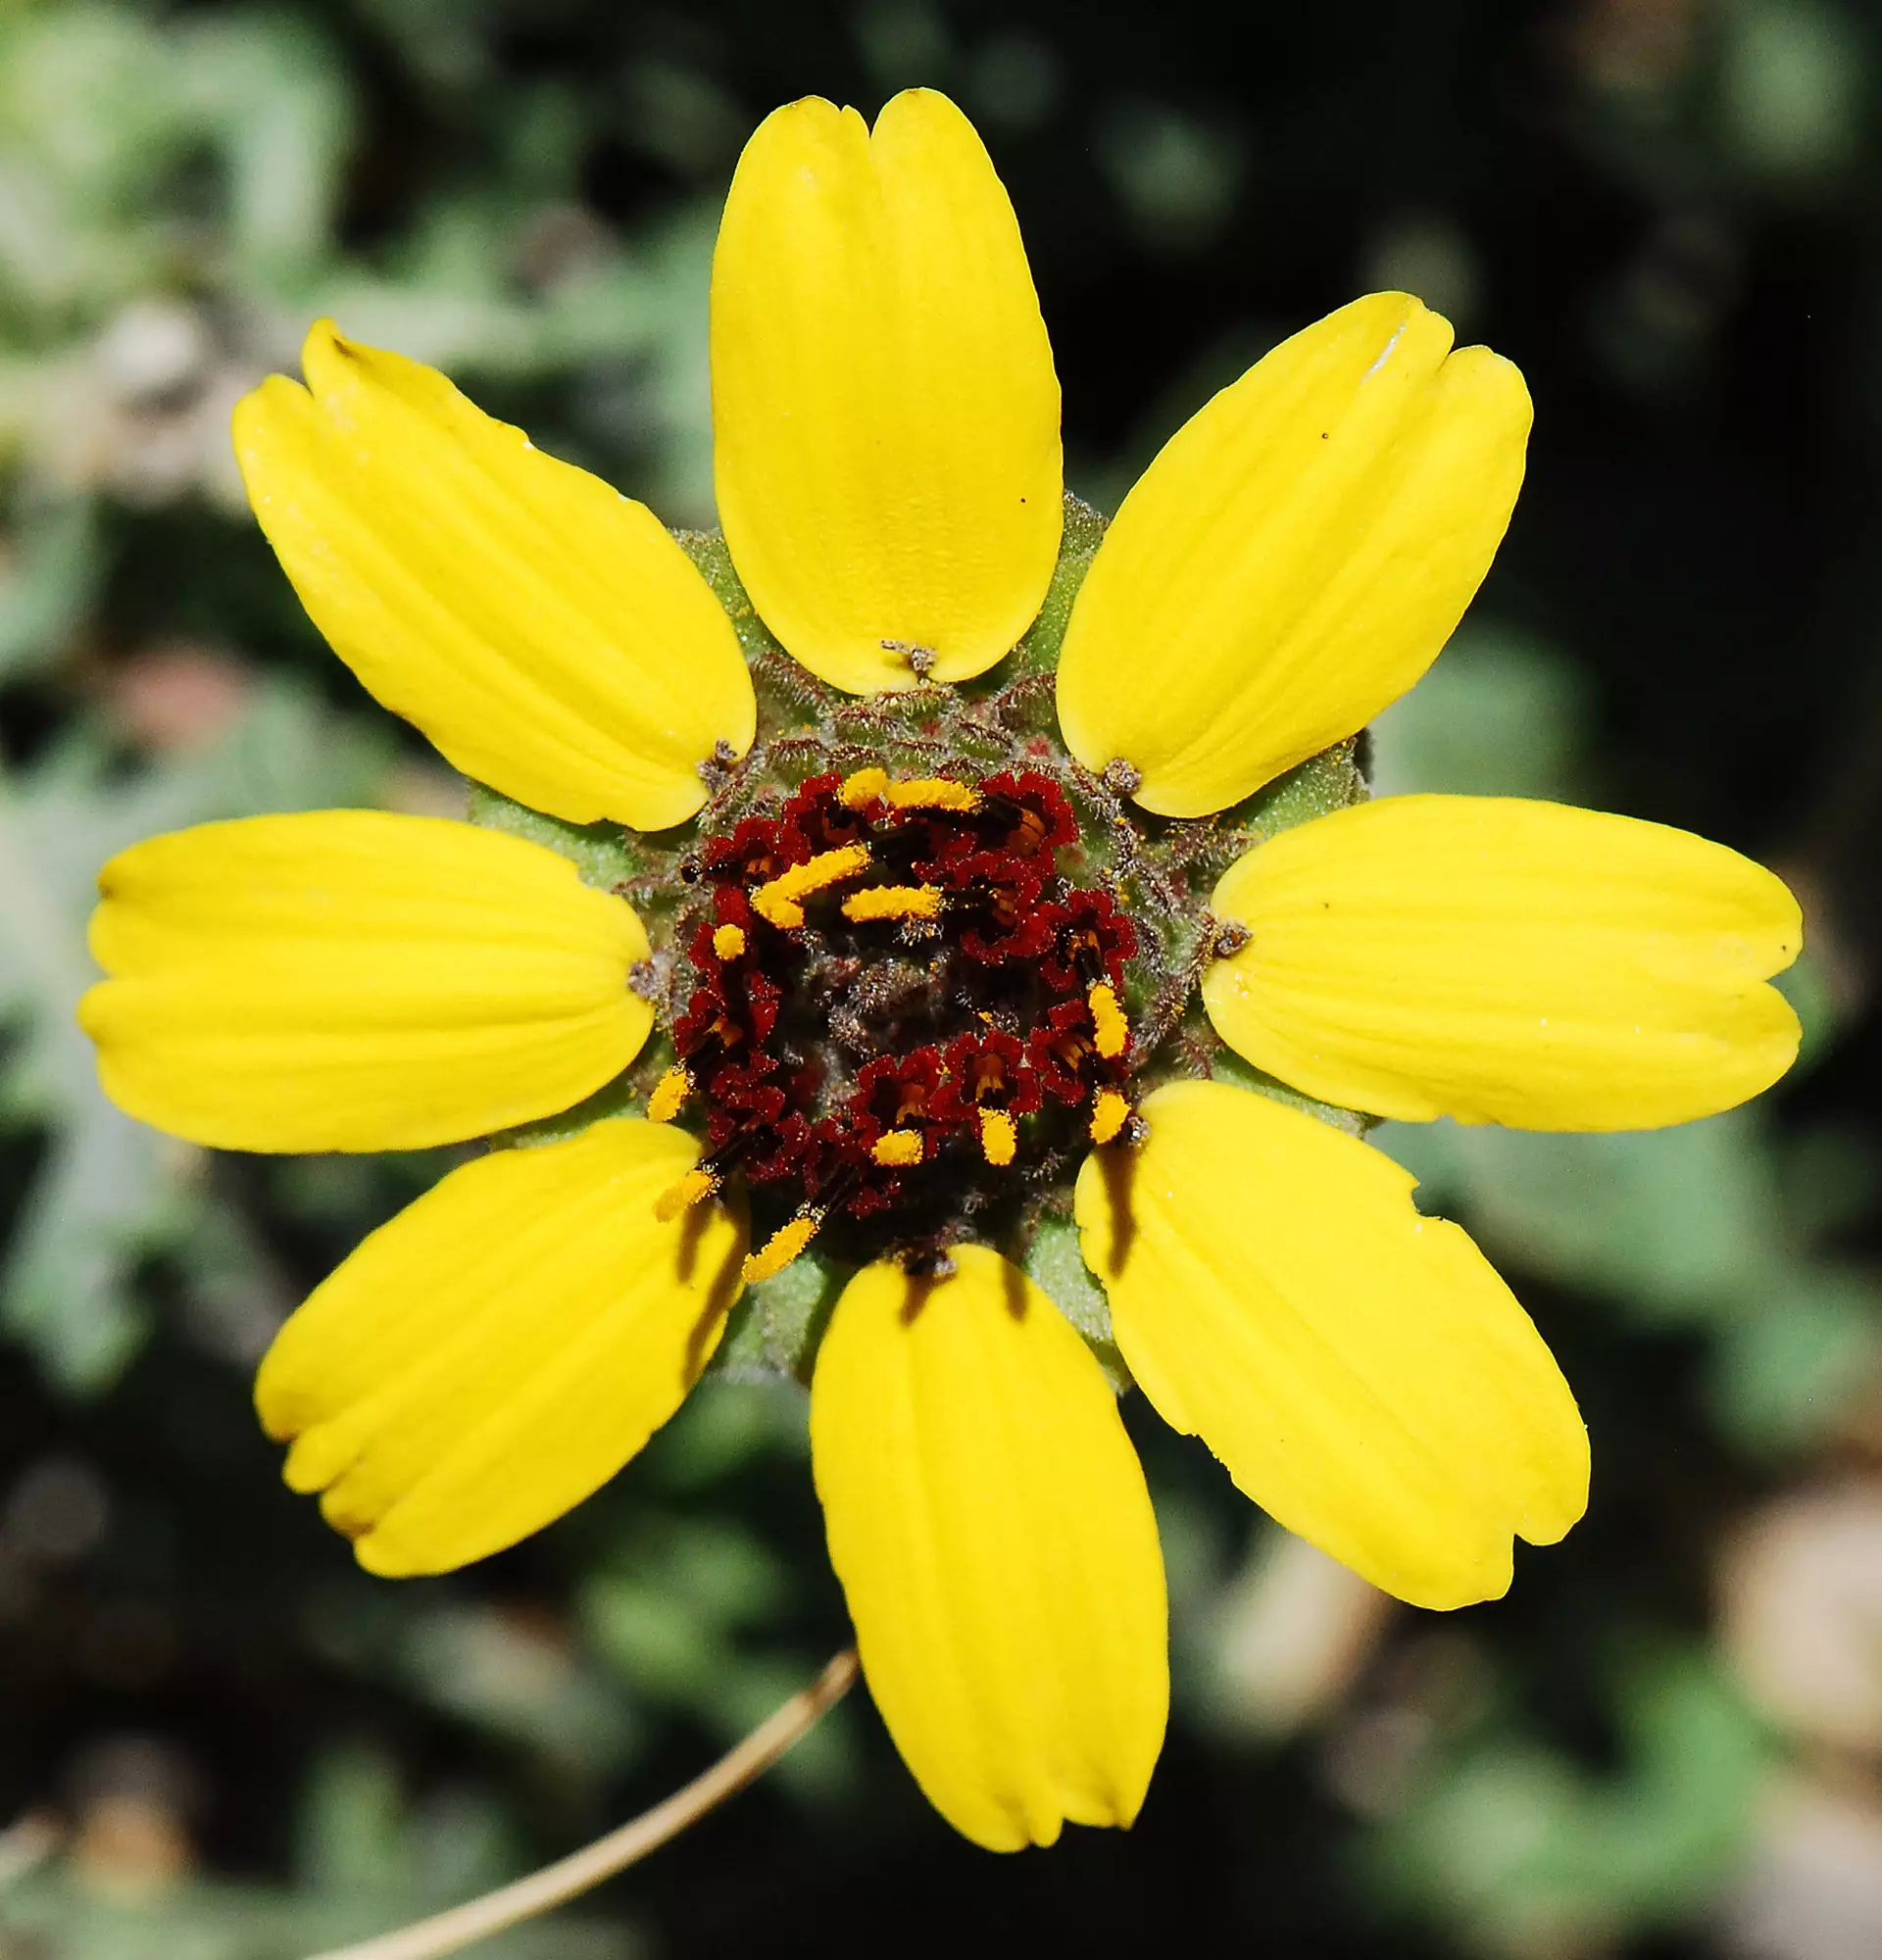 Berlandiera photo - yellow flower